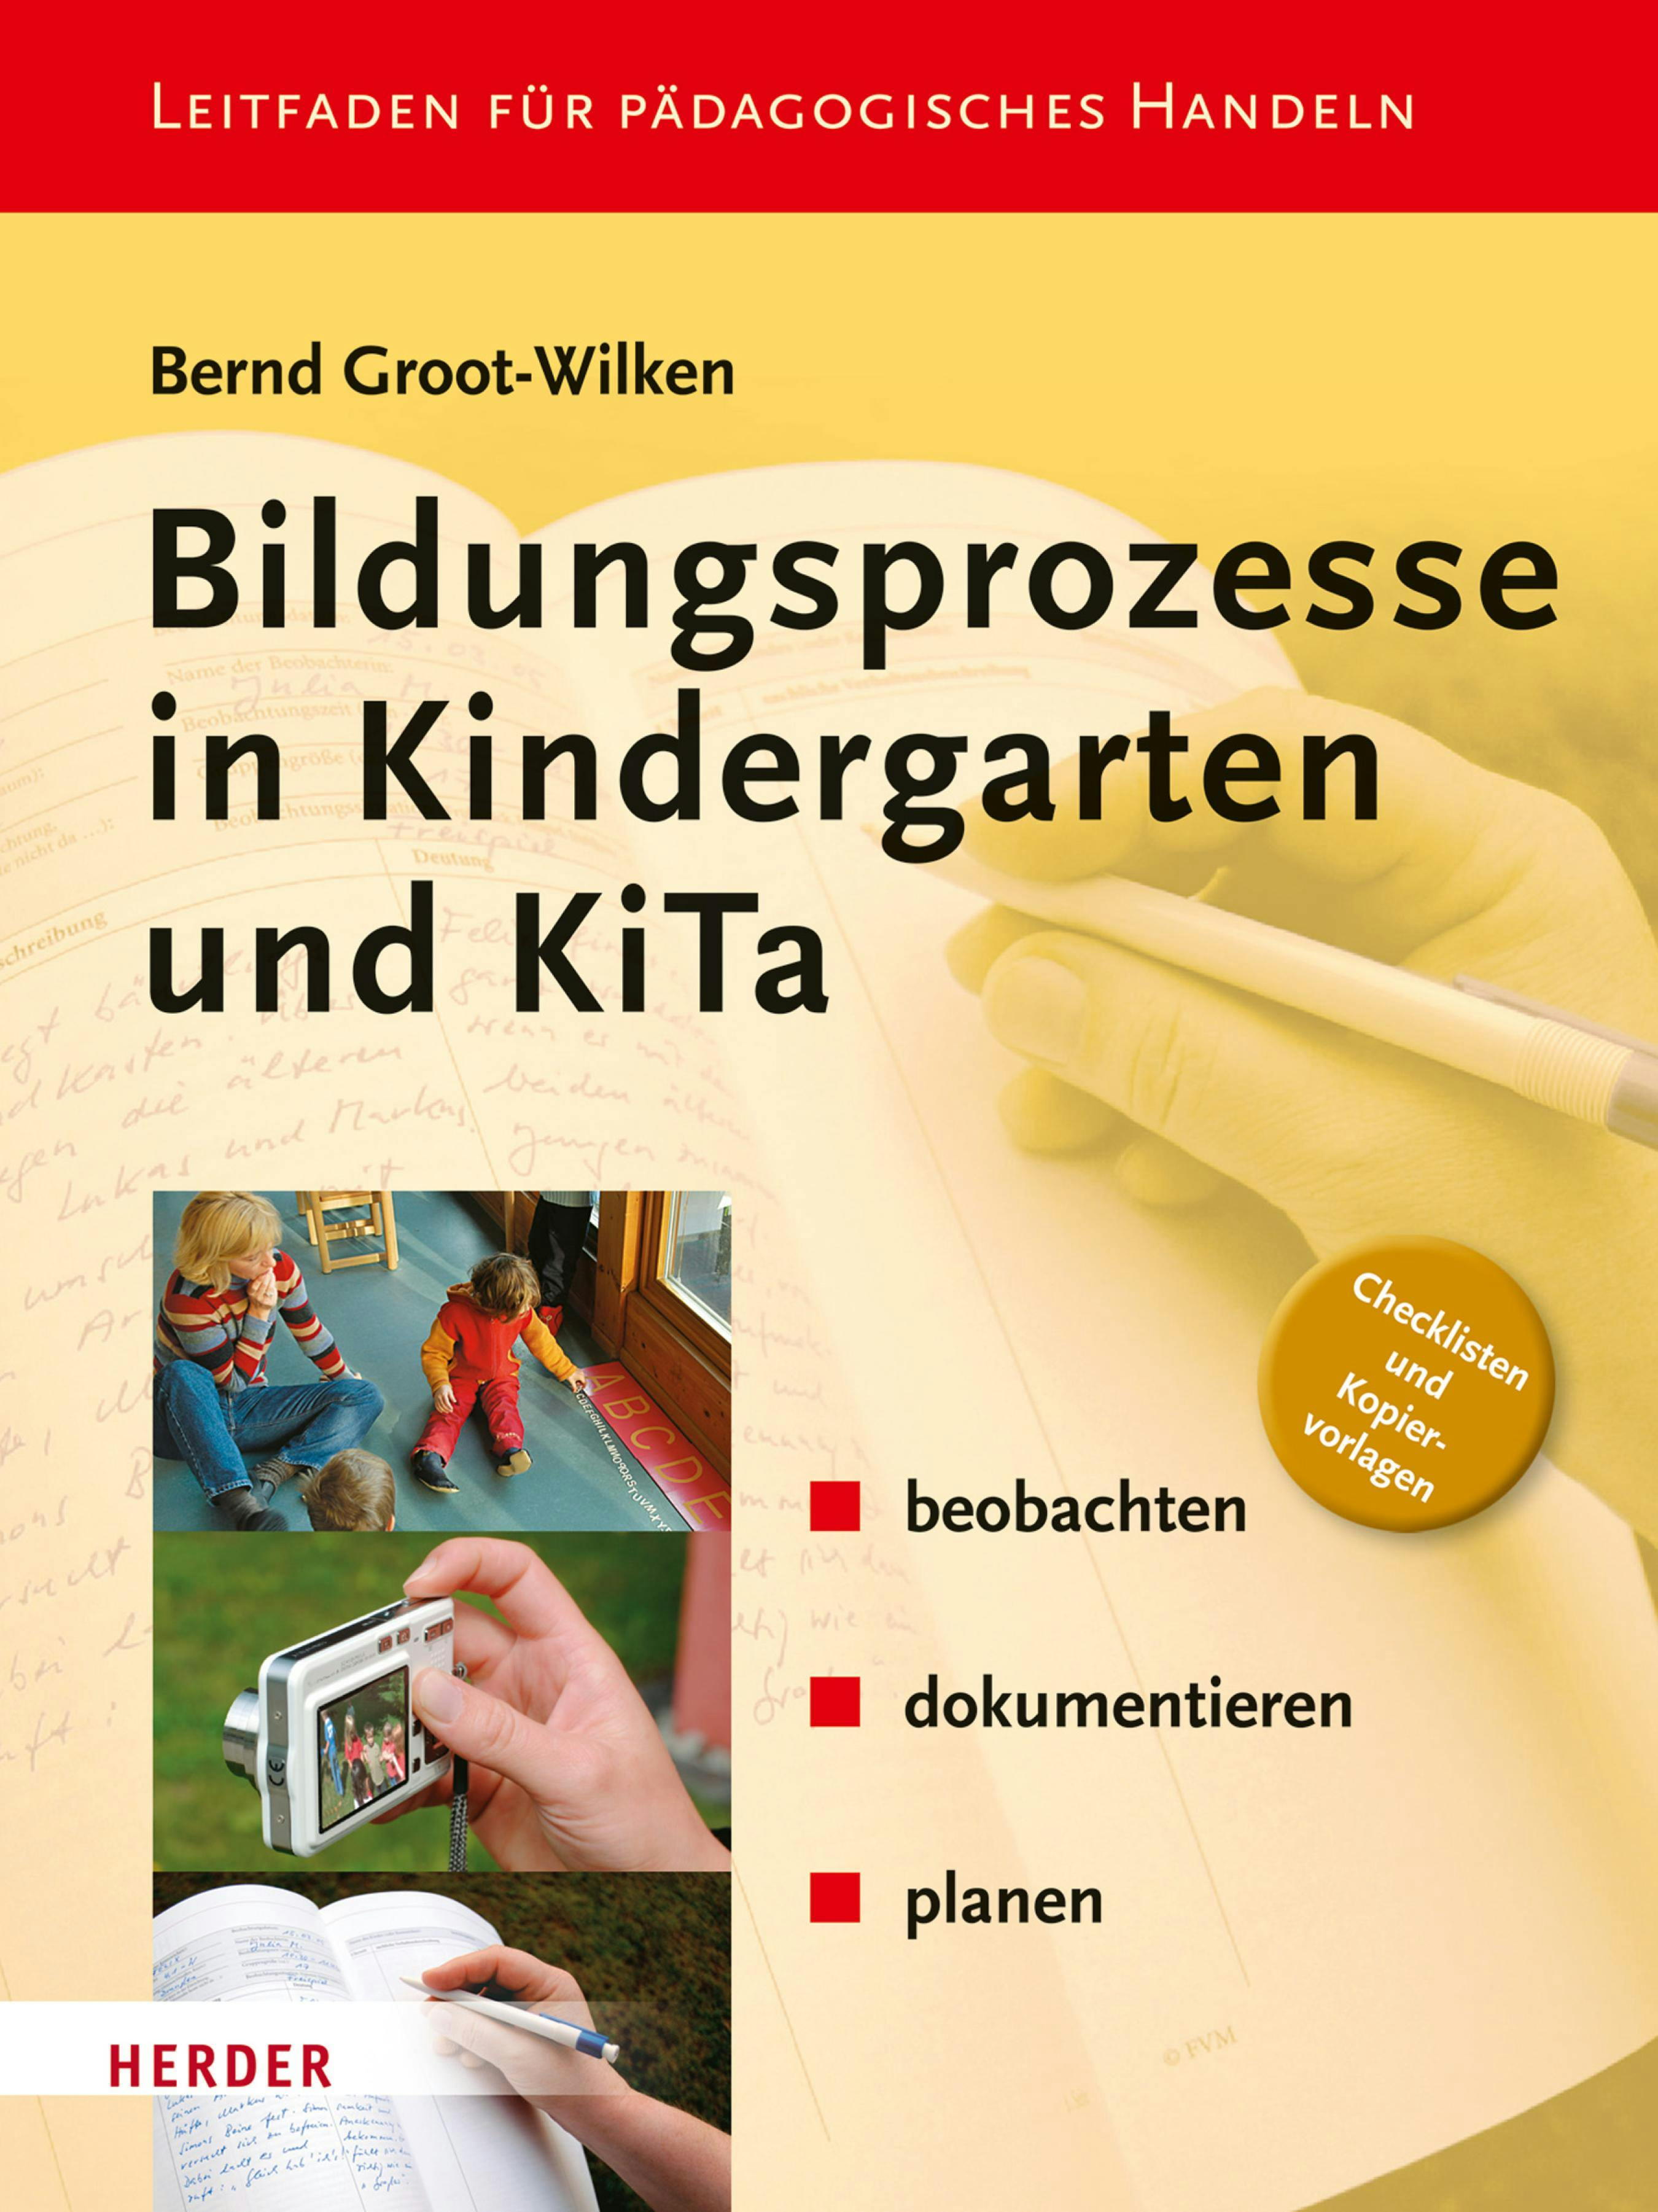 Bildungsprozesse in Kindergarten und KiTa - Bernd Groot-Wilken